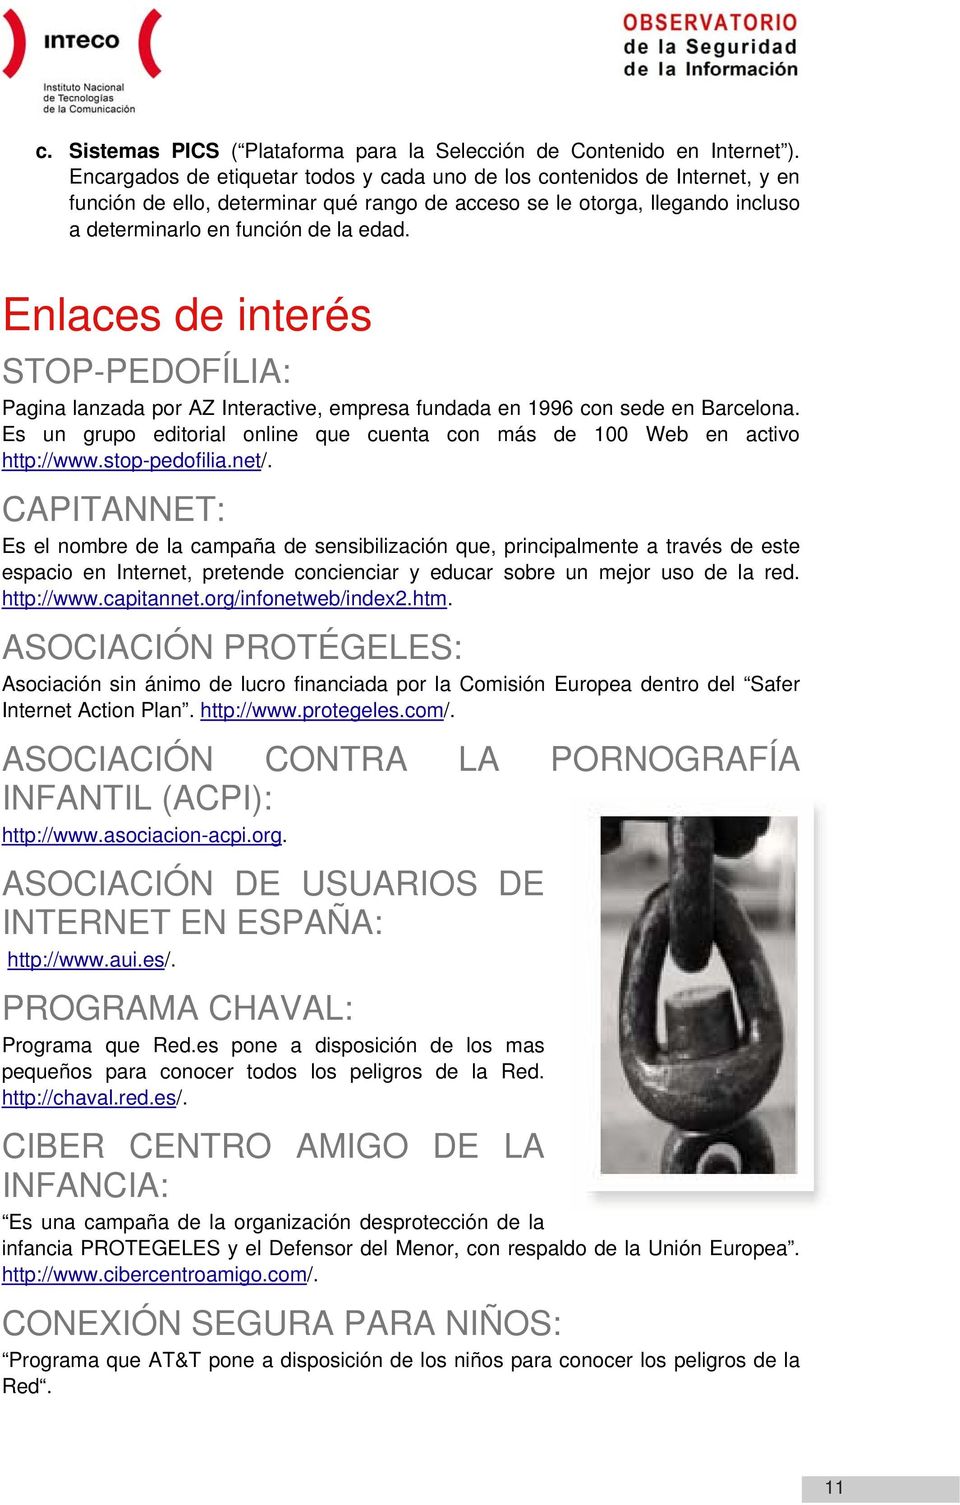 Enlaces de interés STOP-PEDOFÍLIA: Pagina lanzada por AZ Interactive, empresa fundada en 1996 con sede en Barcelona. Es un grupo editorial online que cuenta con más de 100 Web en activo http://www.